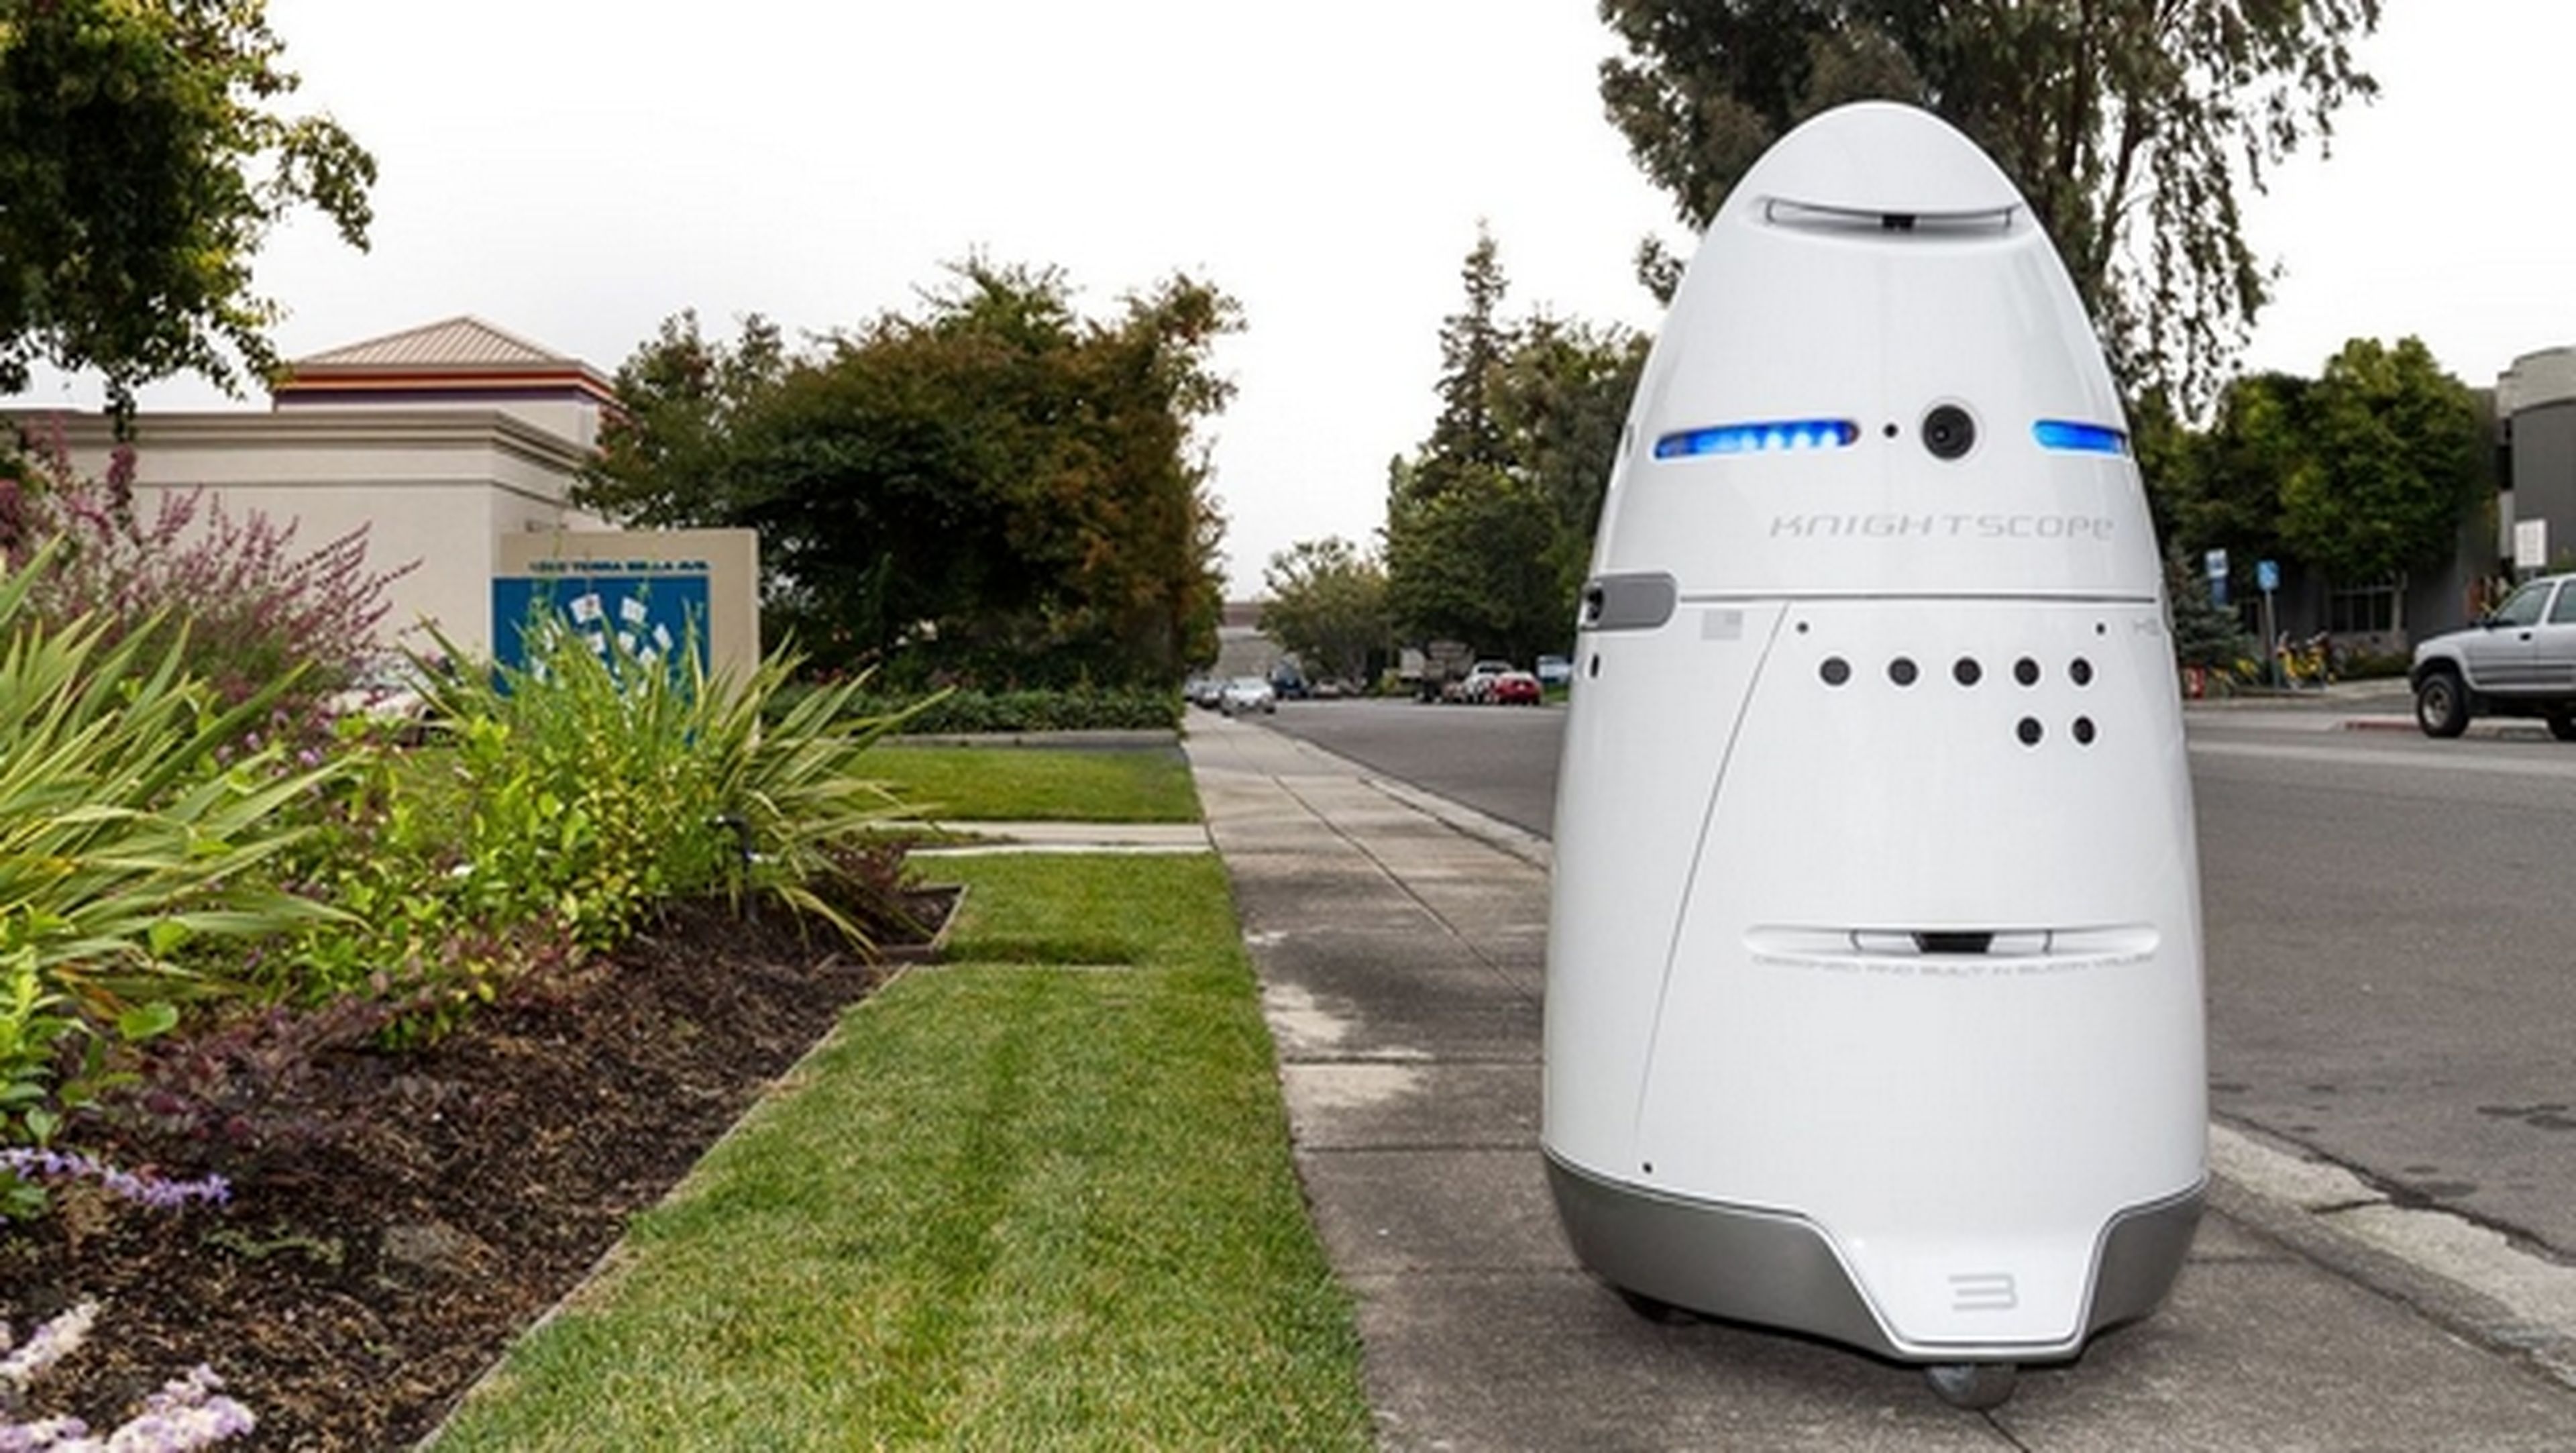 Robots policía knightscope K5 ya patrullan las calles de California